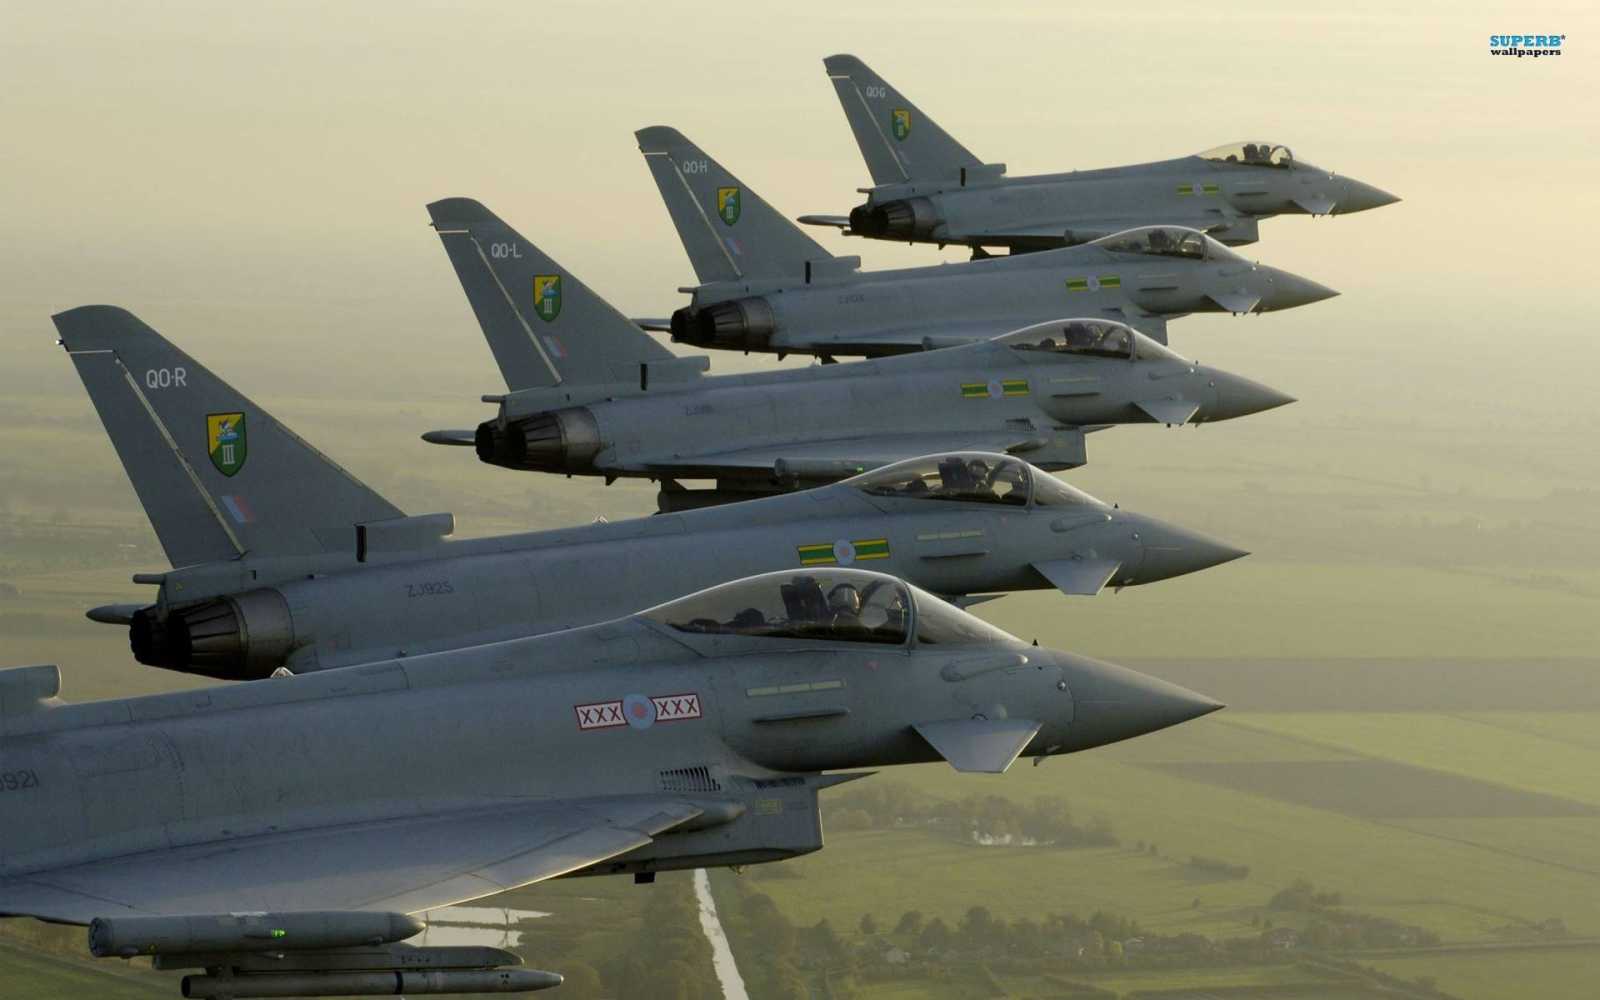 Romániában állomásozó Typhoon vadászgépeket is bevetettek az Izraelt segítő akcióban  